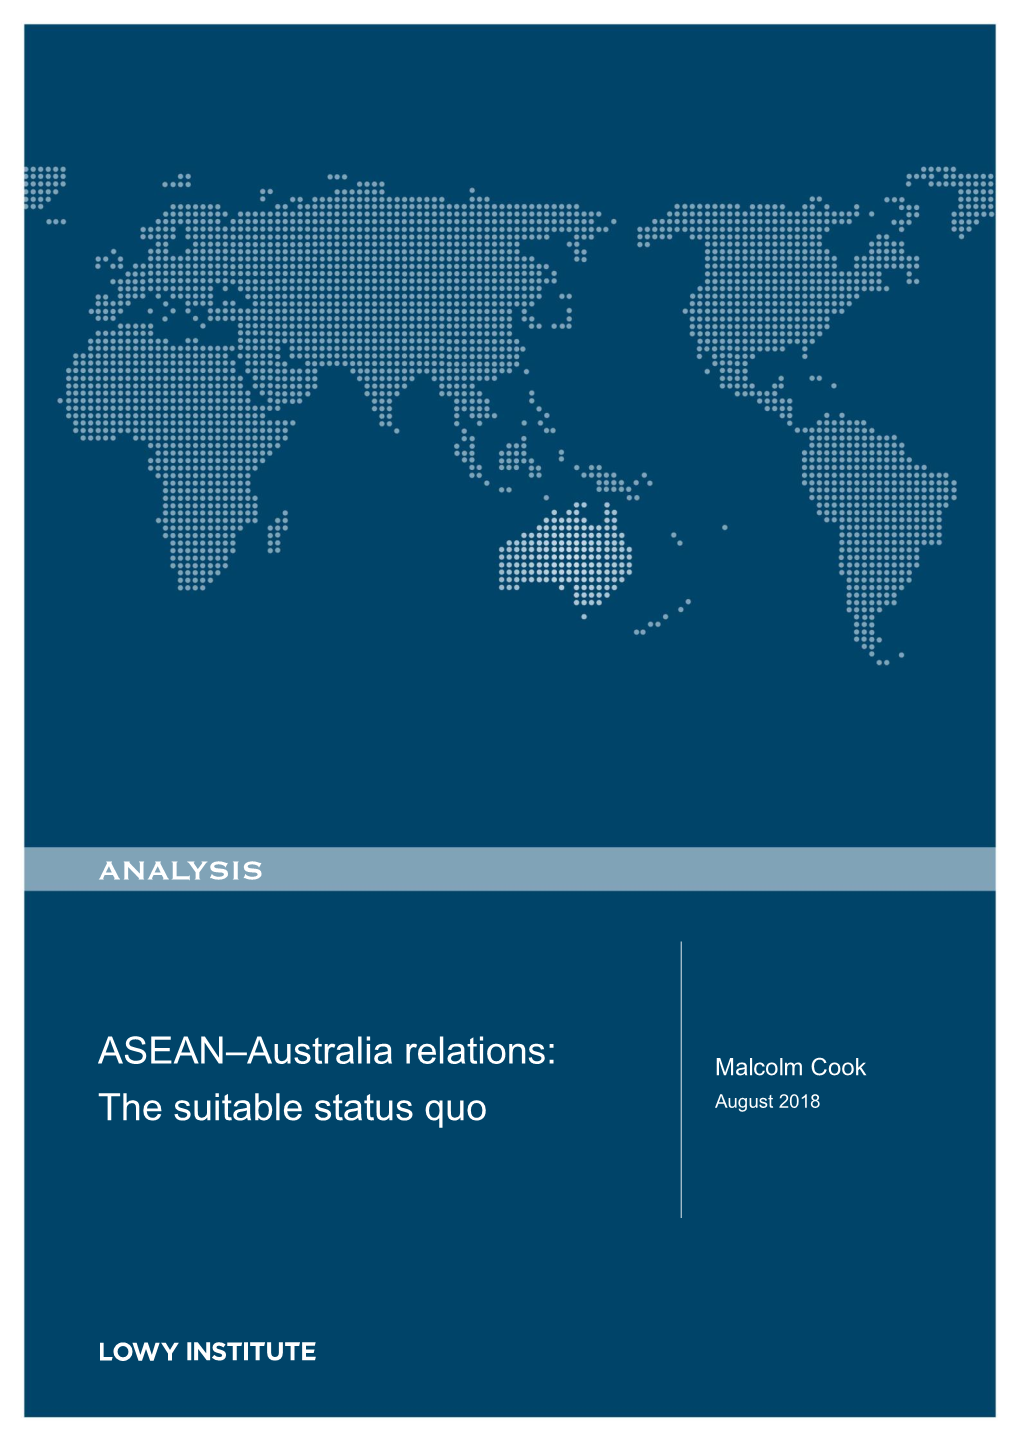 ASEAN–Australia Relations: Malcolm Cook the Suitable Status Quo August 2018